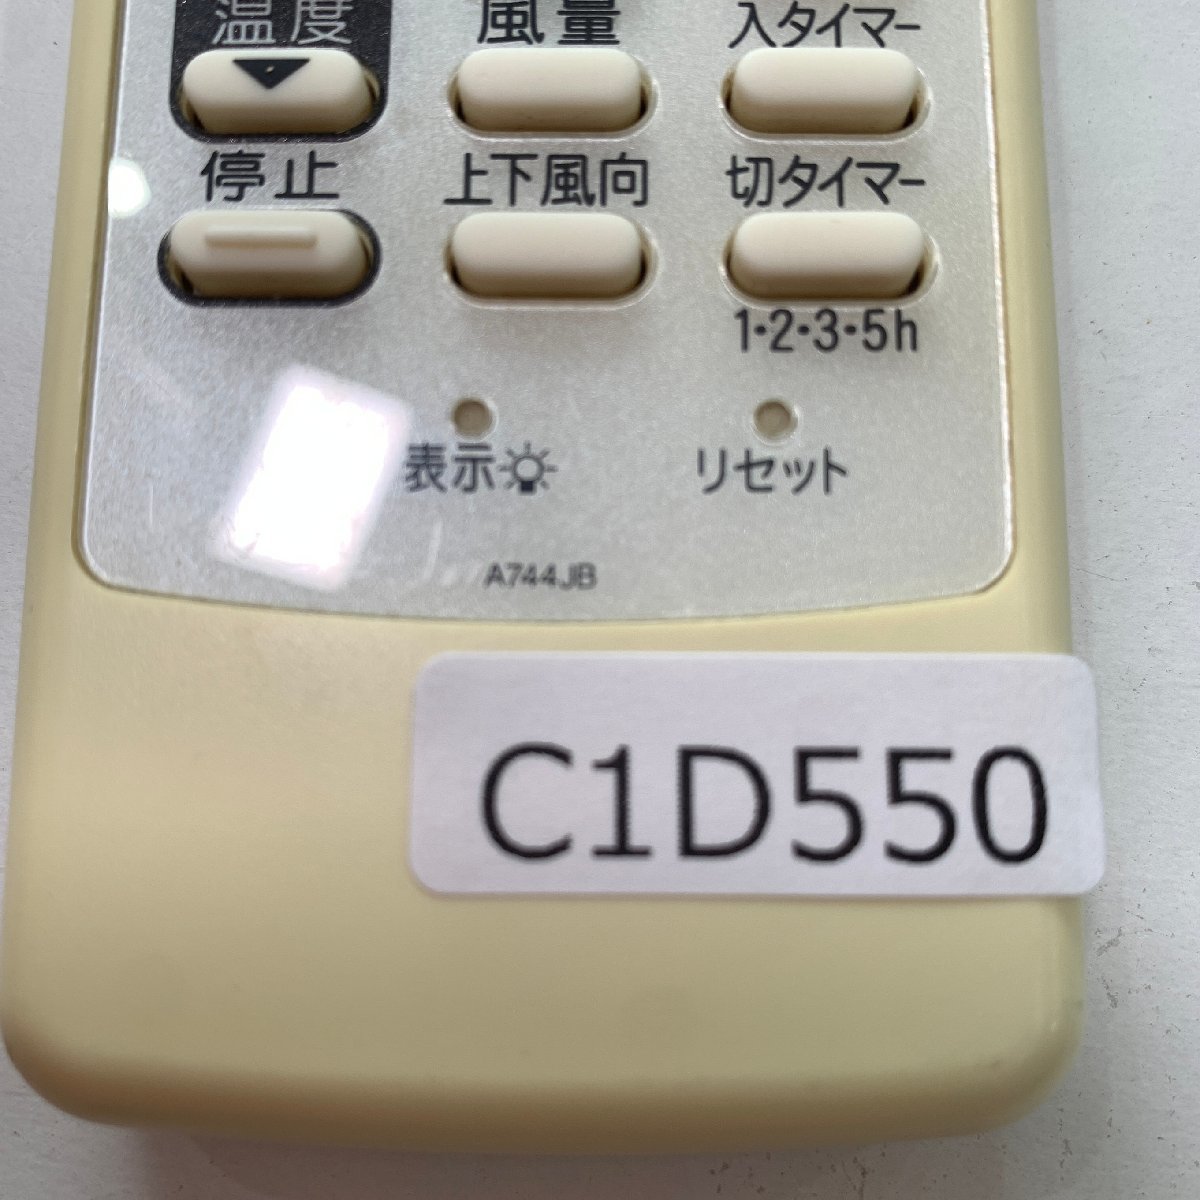 C1D550 [ стоимость доставки 185 иен ] кондиционер дистанционный пульт / SHARP sharp A744JB рабочее состояние подтверждено * немедленная отправка *